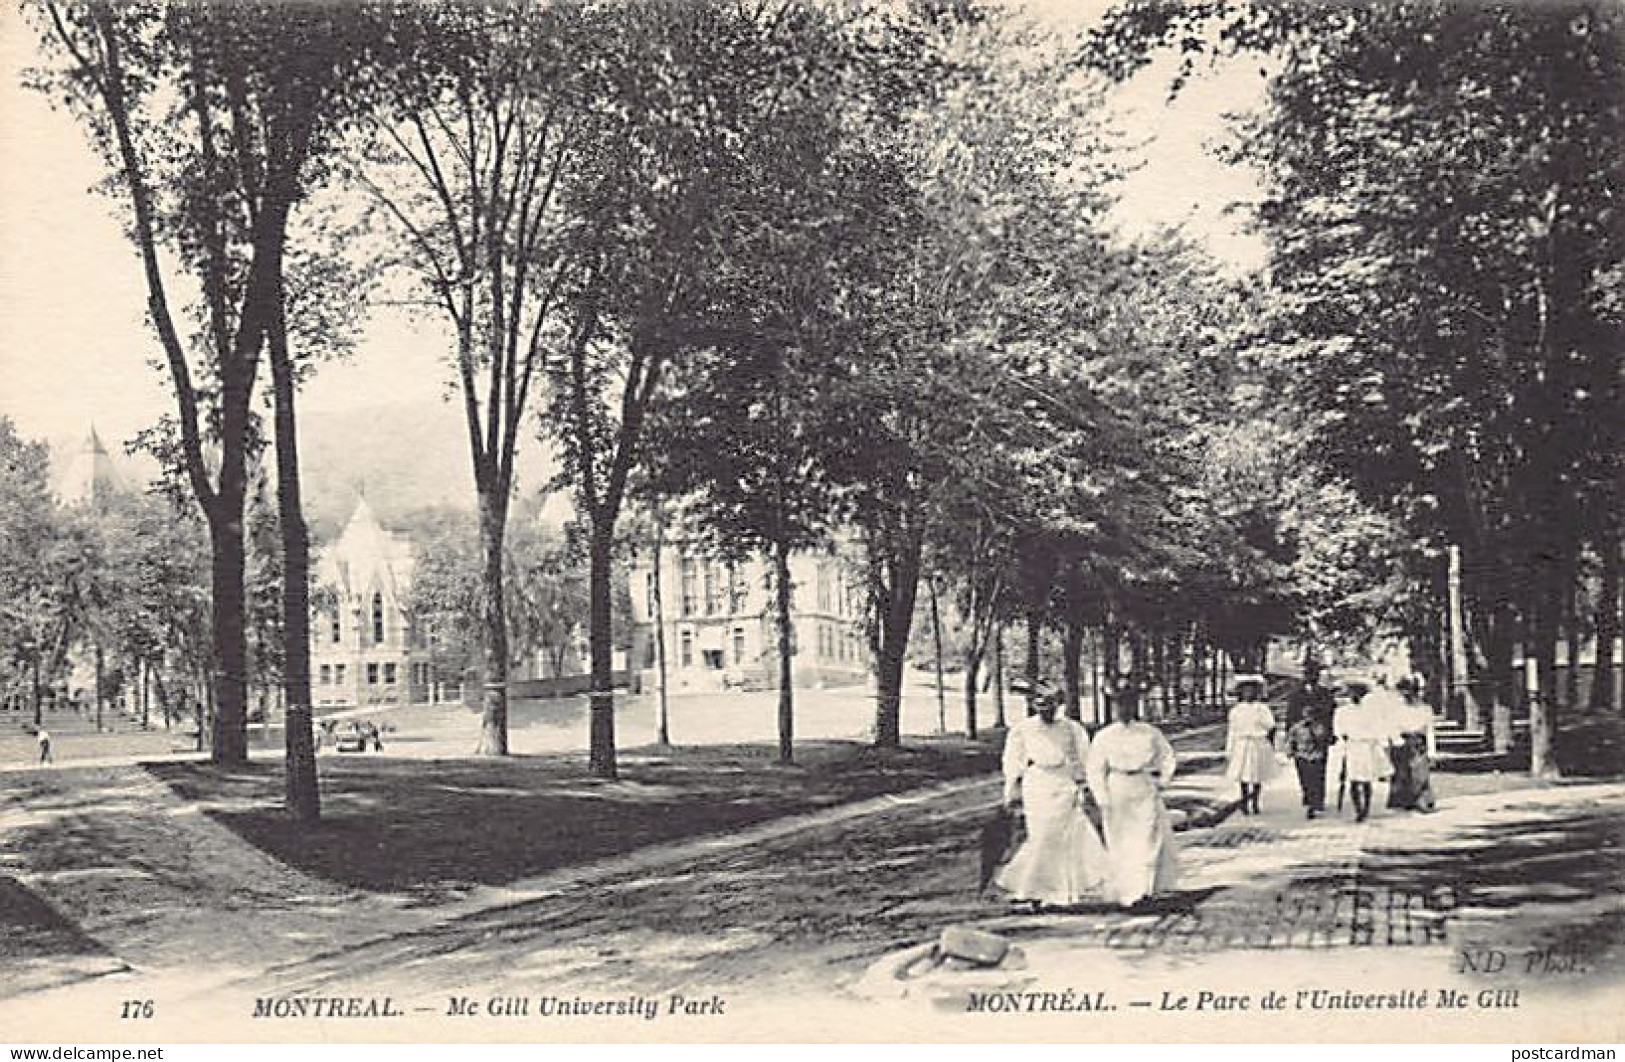 MONTRÉAL (P.Q.) Le Parc De L'Université McGill - Ed. Neurdein ND Phot. 176 - Montreal